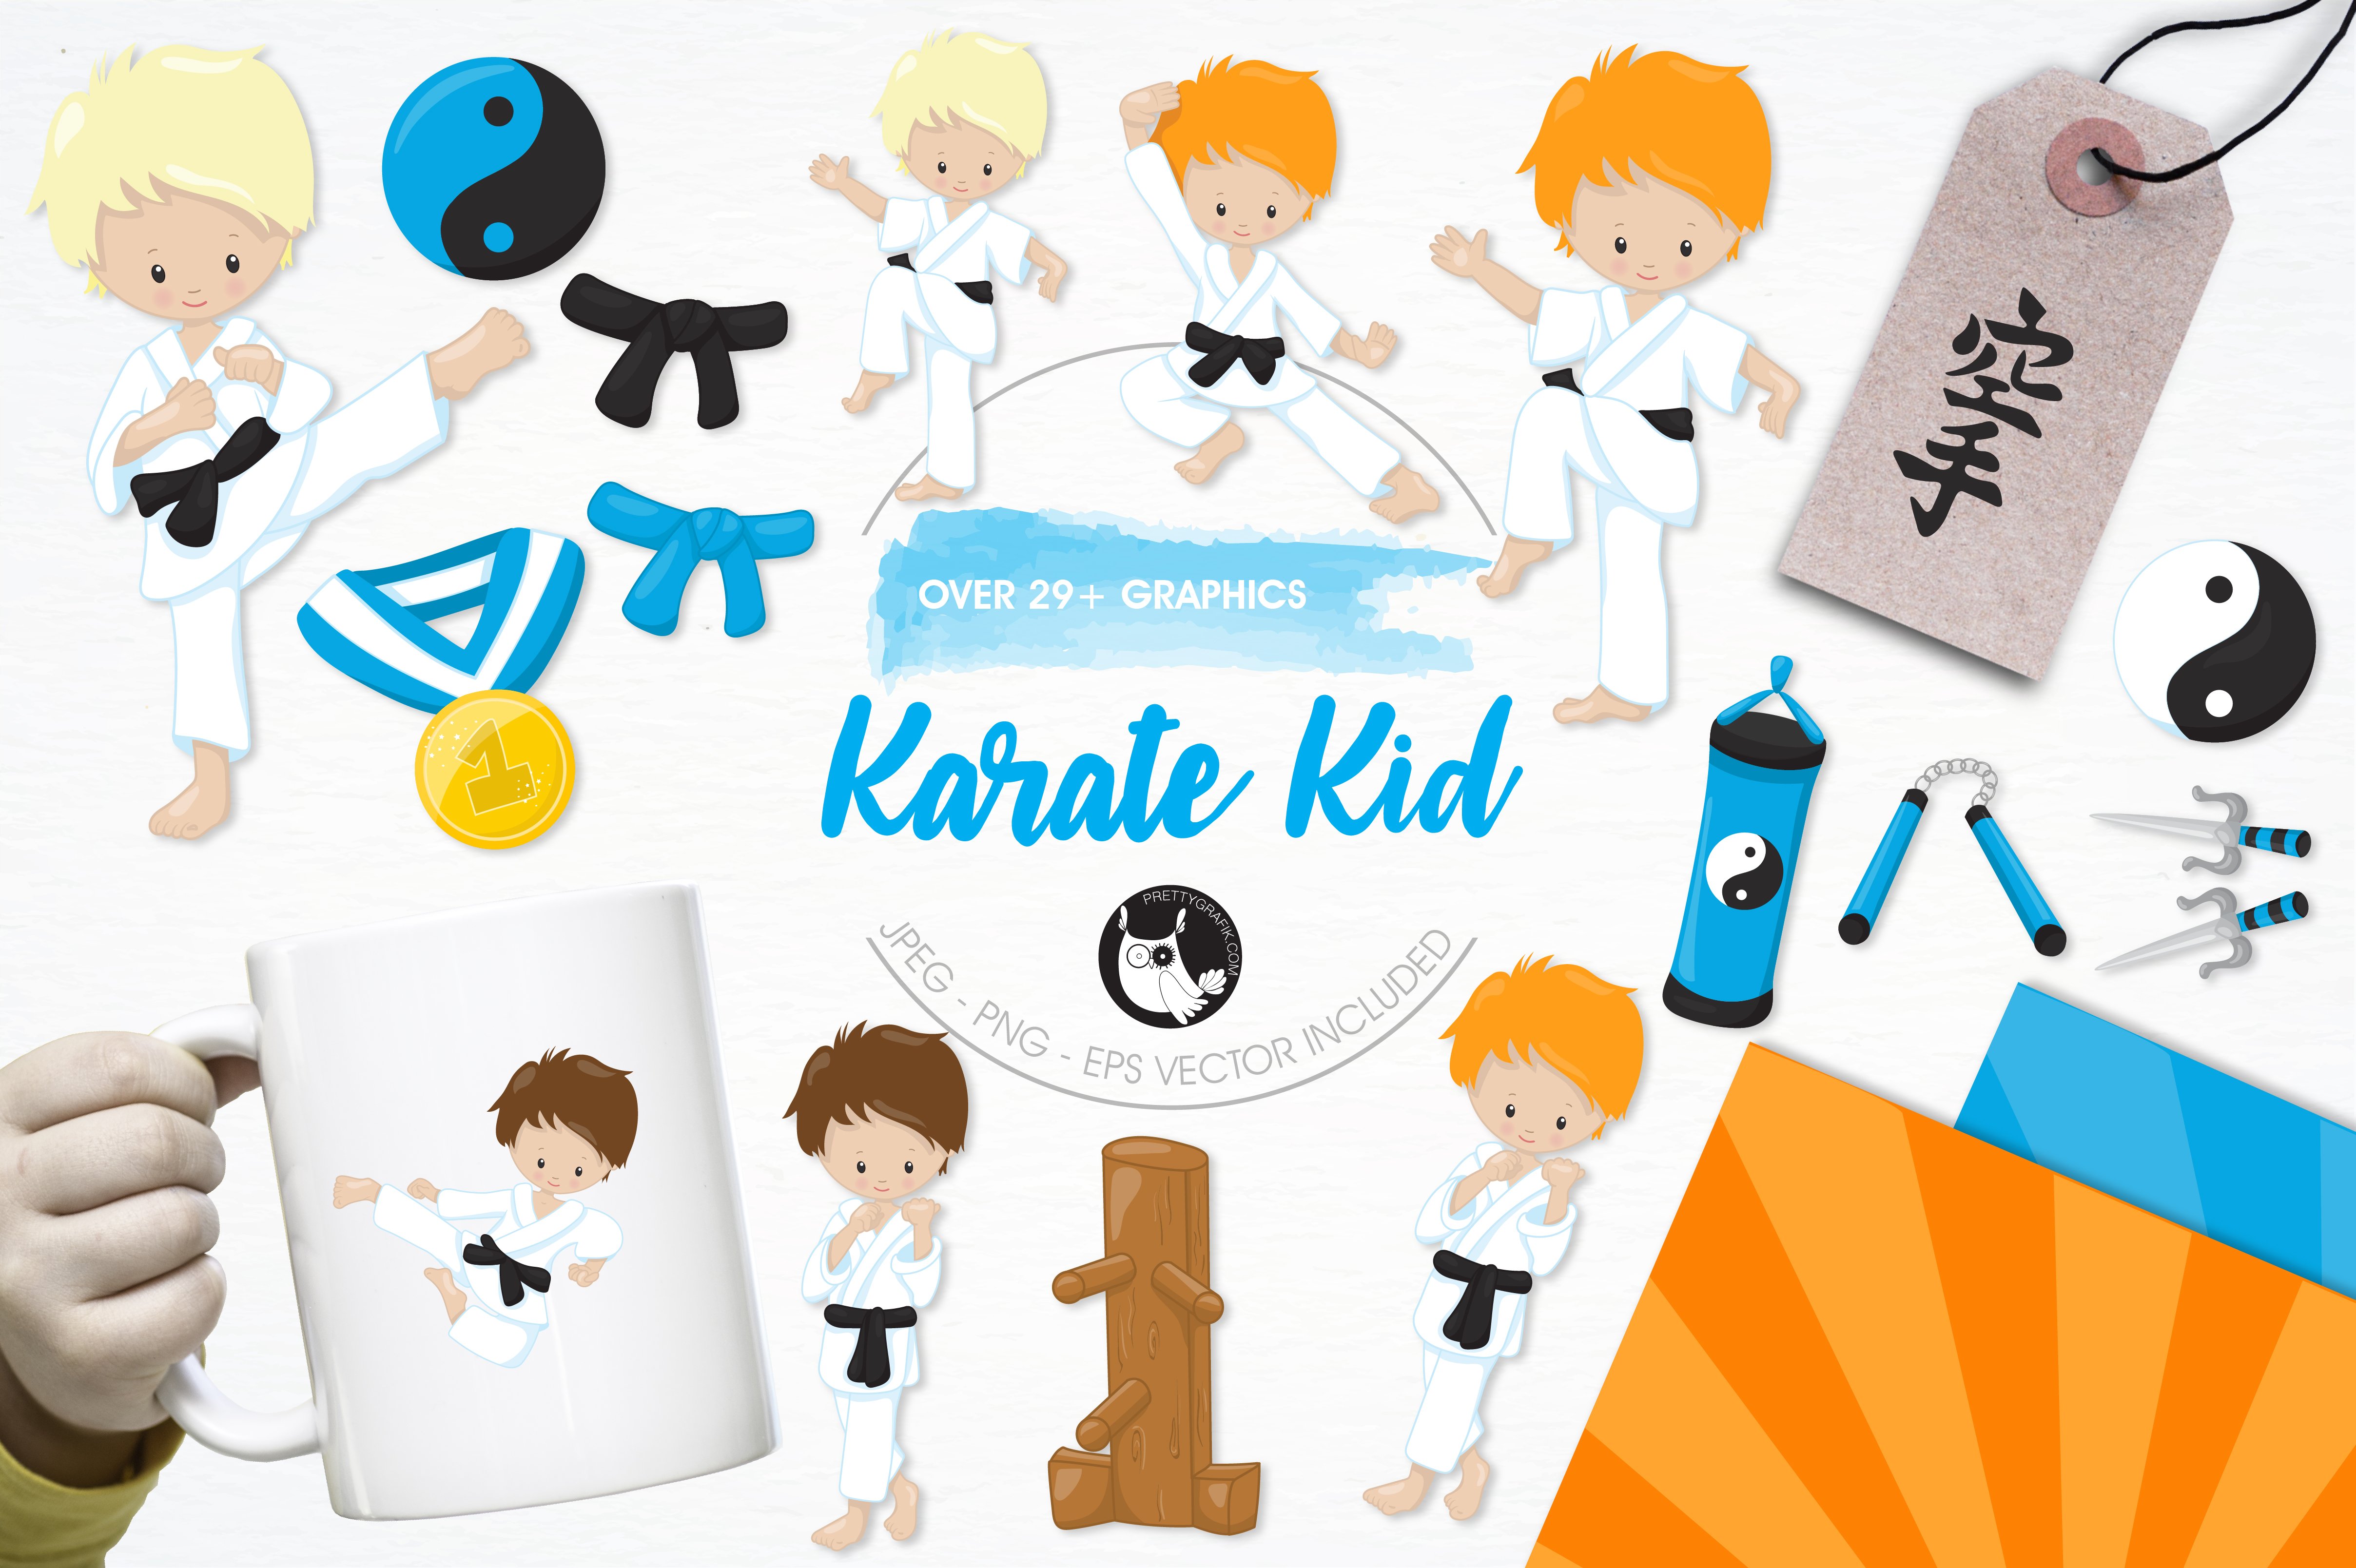 Karate kid illustration pack cover image.